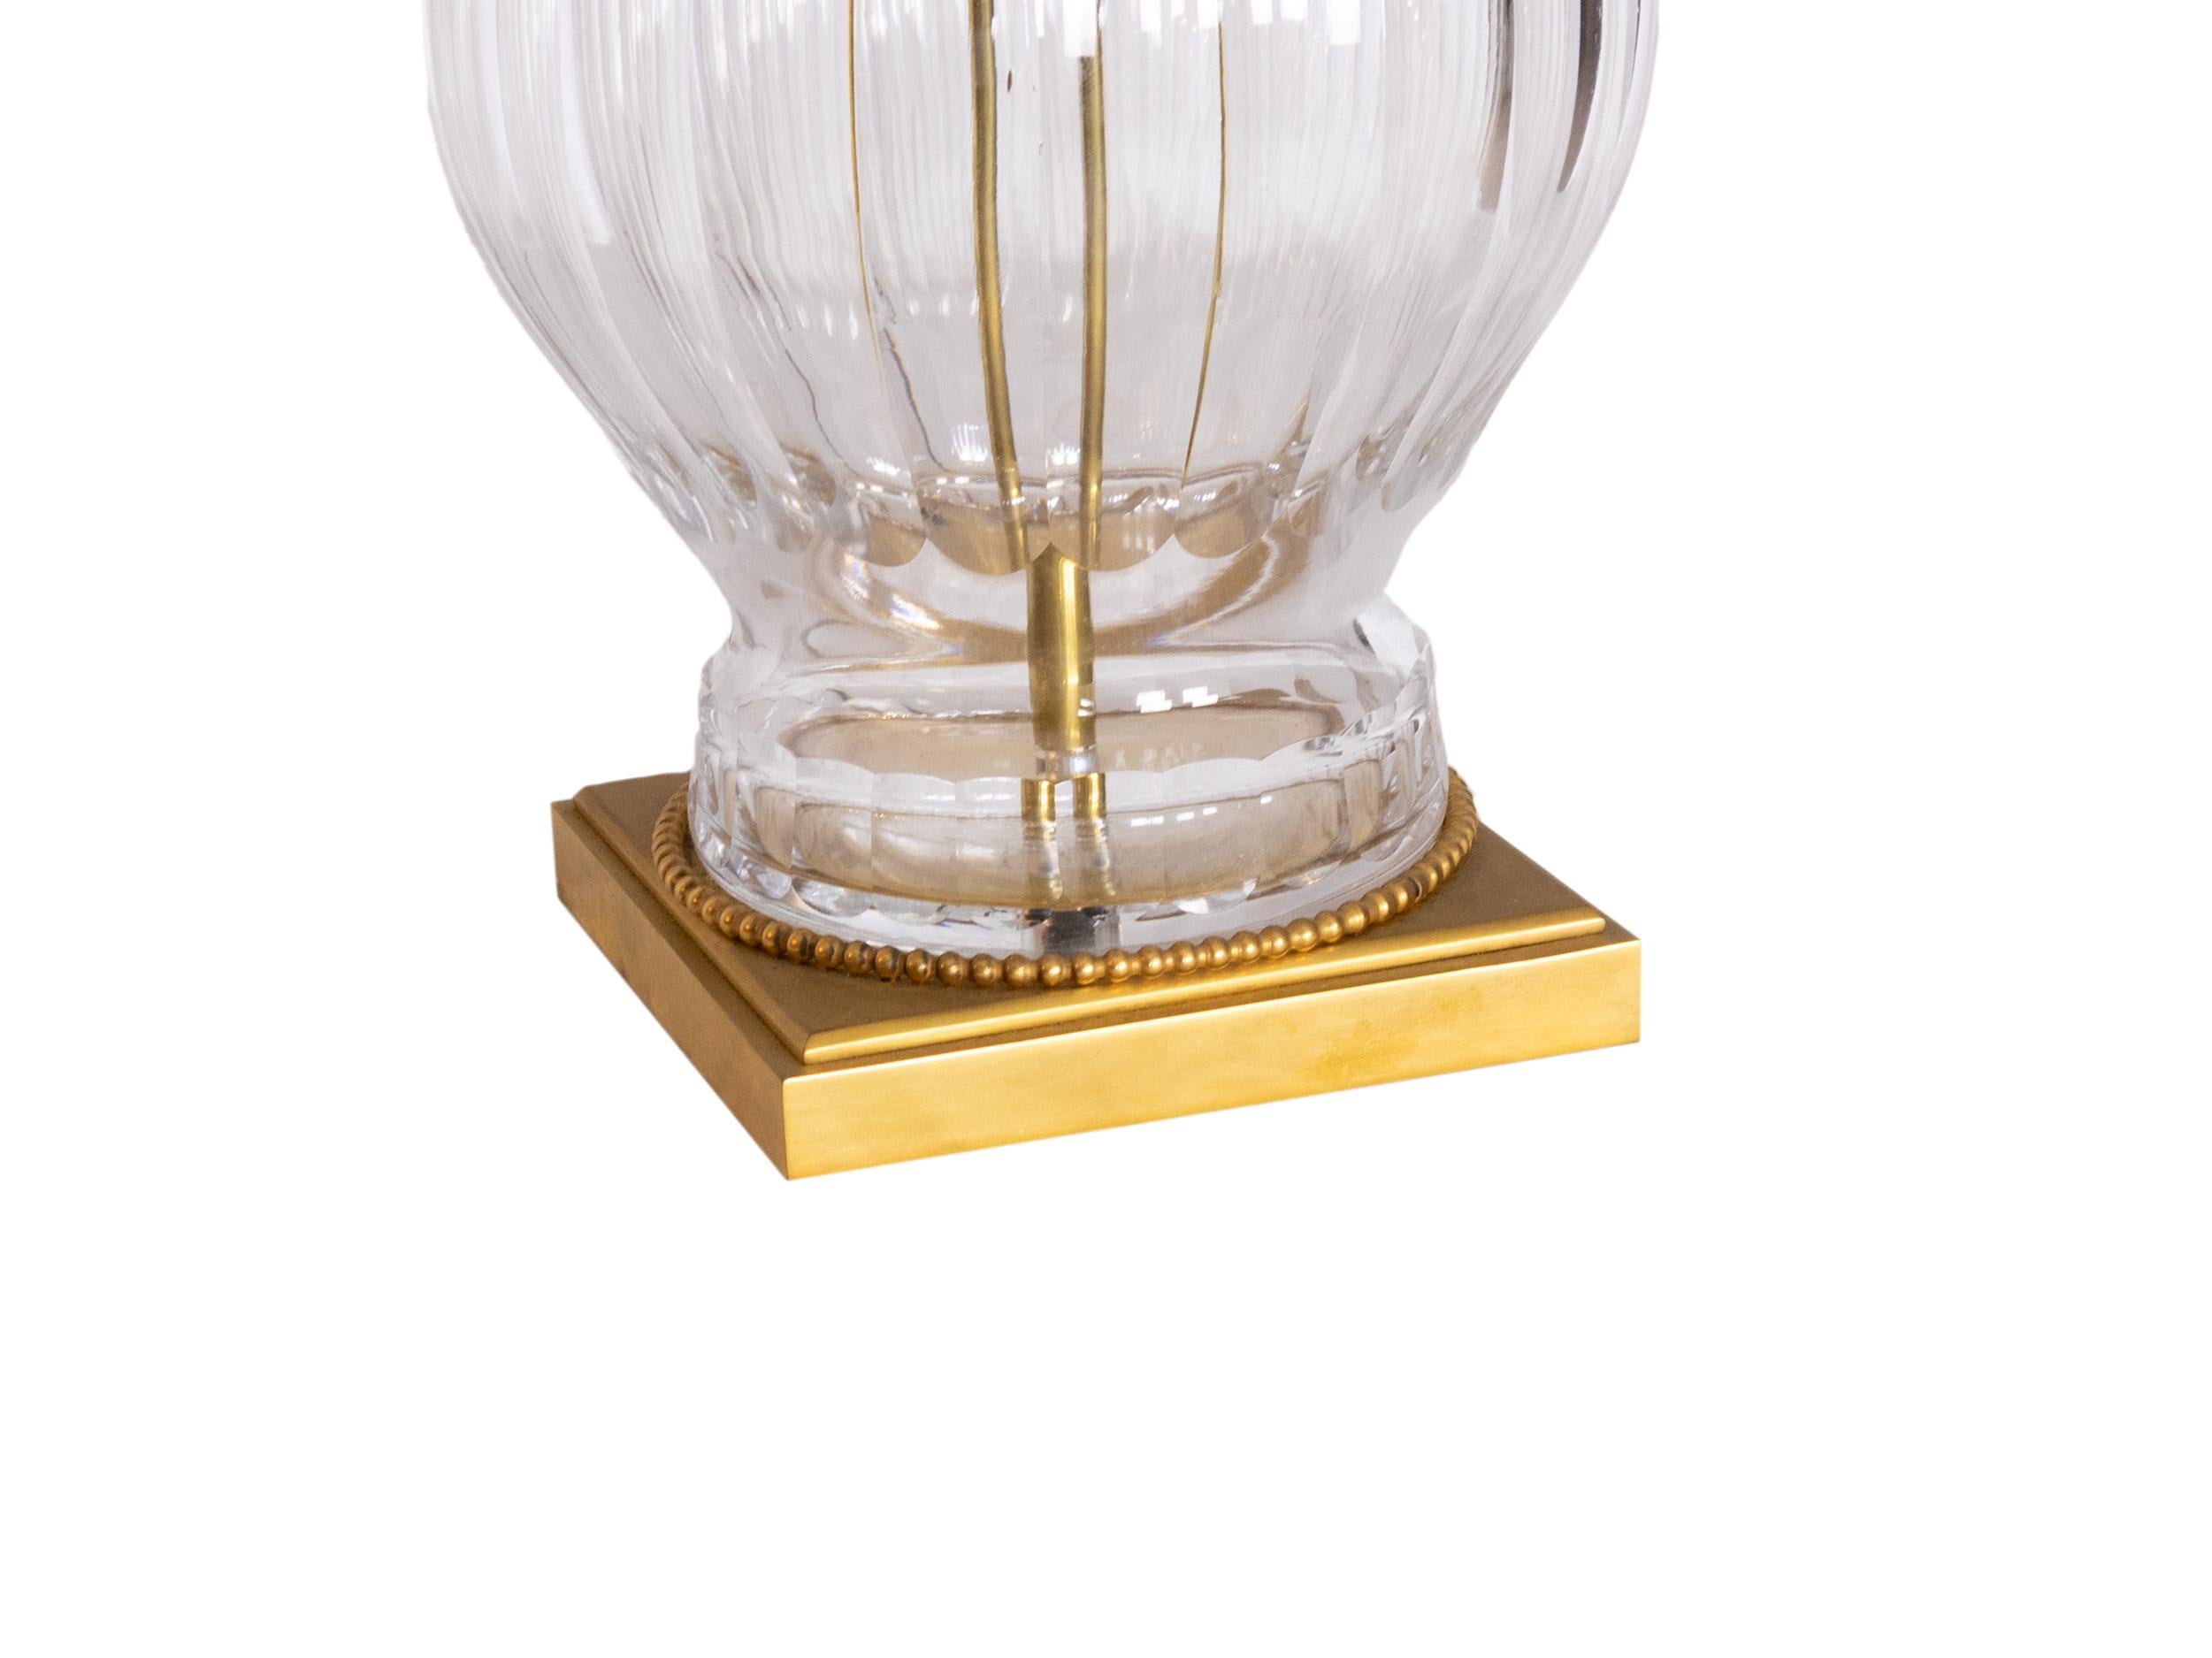 Eine unverwechselbare Lampe aus lichtdurchlässigem Kristallglas mit bronze- und goldfarbenen Akzenten. Eine Verschmelzung von Neoklassizismus, Kristall und der goldenen Kraft des Louis XV-Stils.
 
Arbeiten und mit elektrischer Installation vor